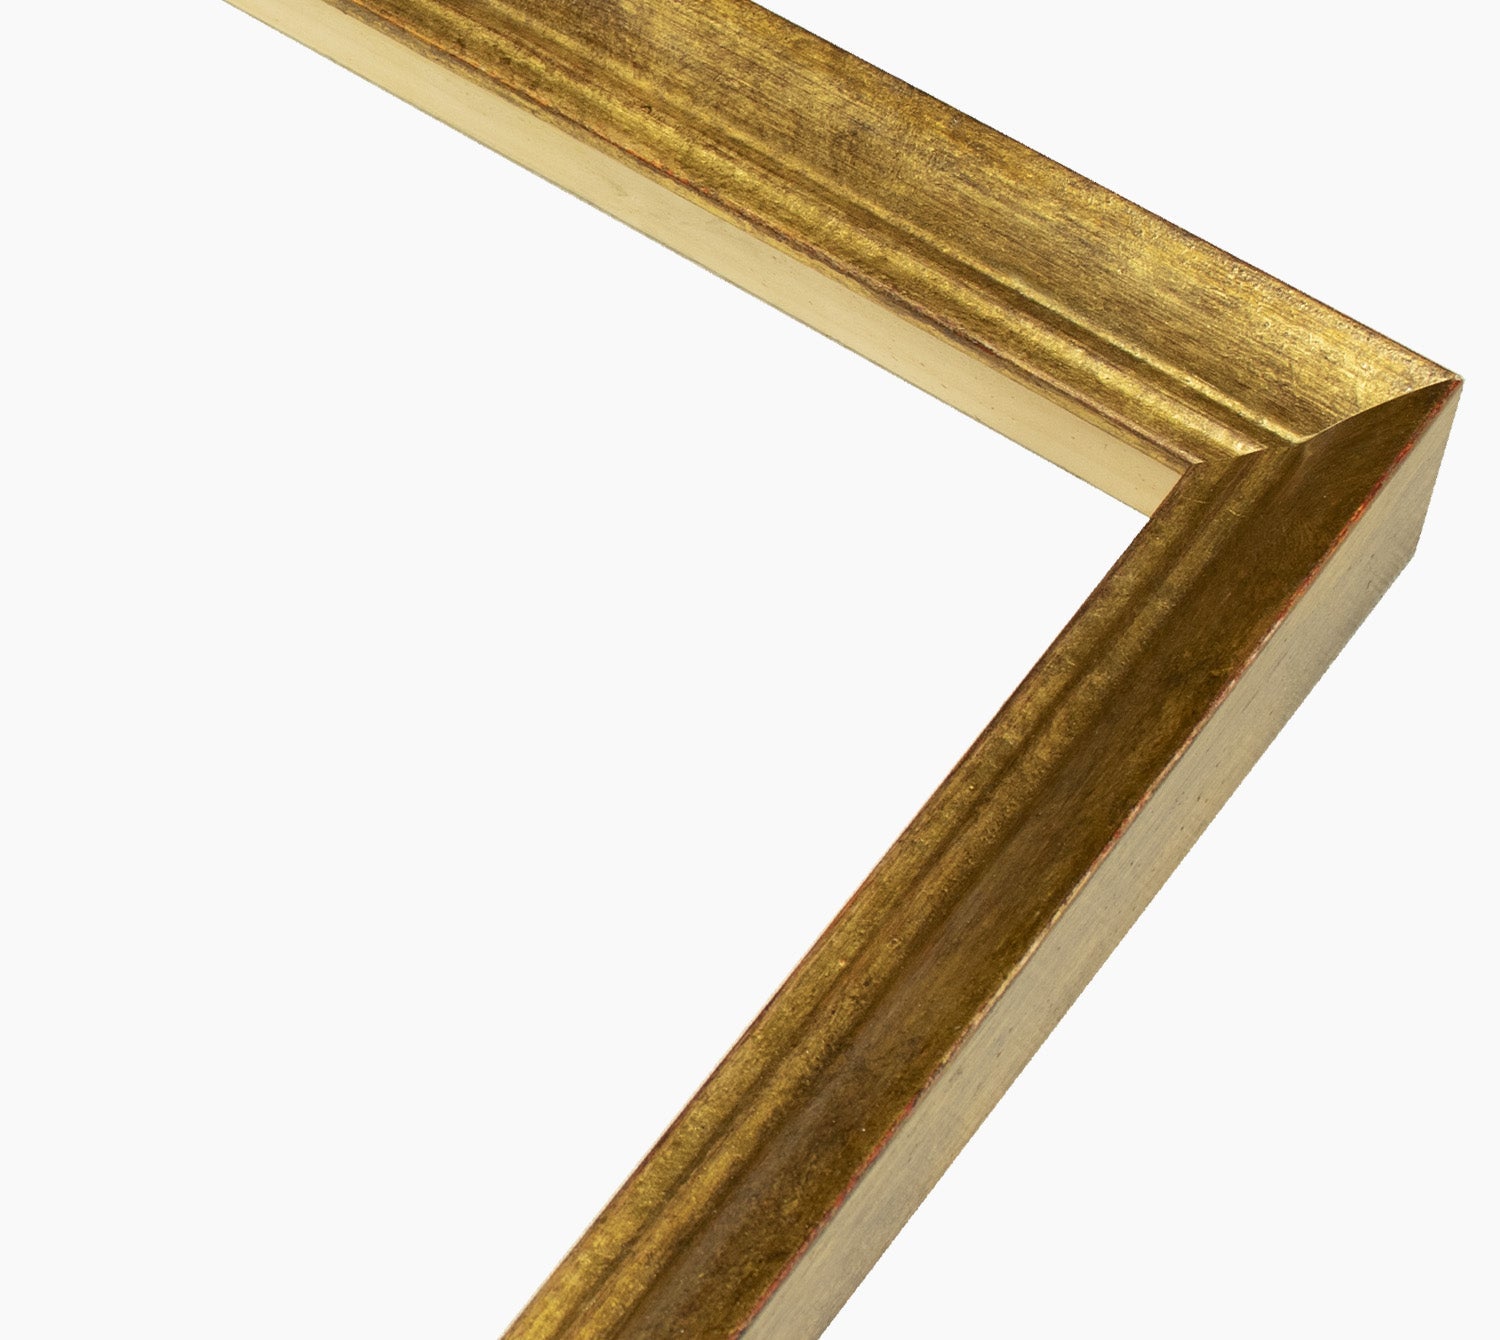 226.230 cadre en bois à la feuille d'or antique mesure de profil 42x26 mm Lombarda cornici S.n.c.